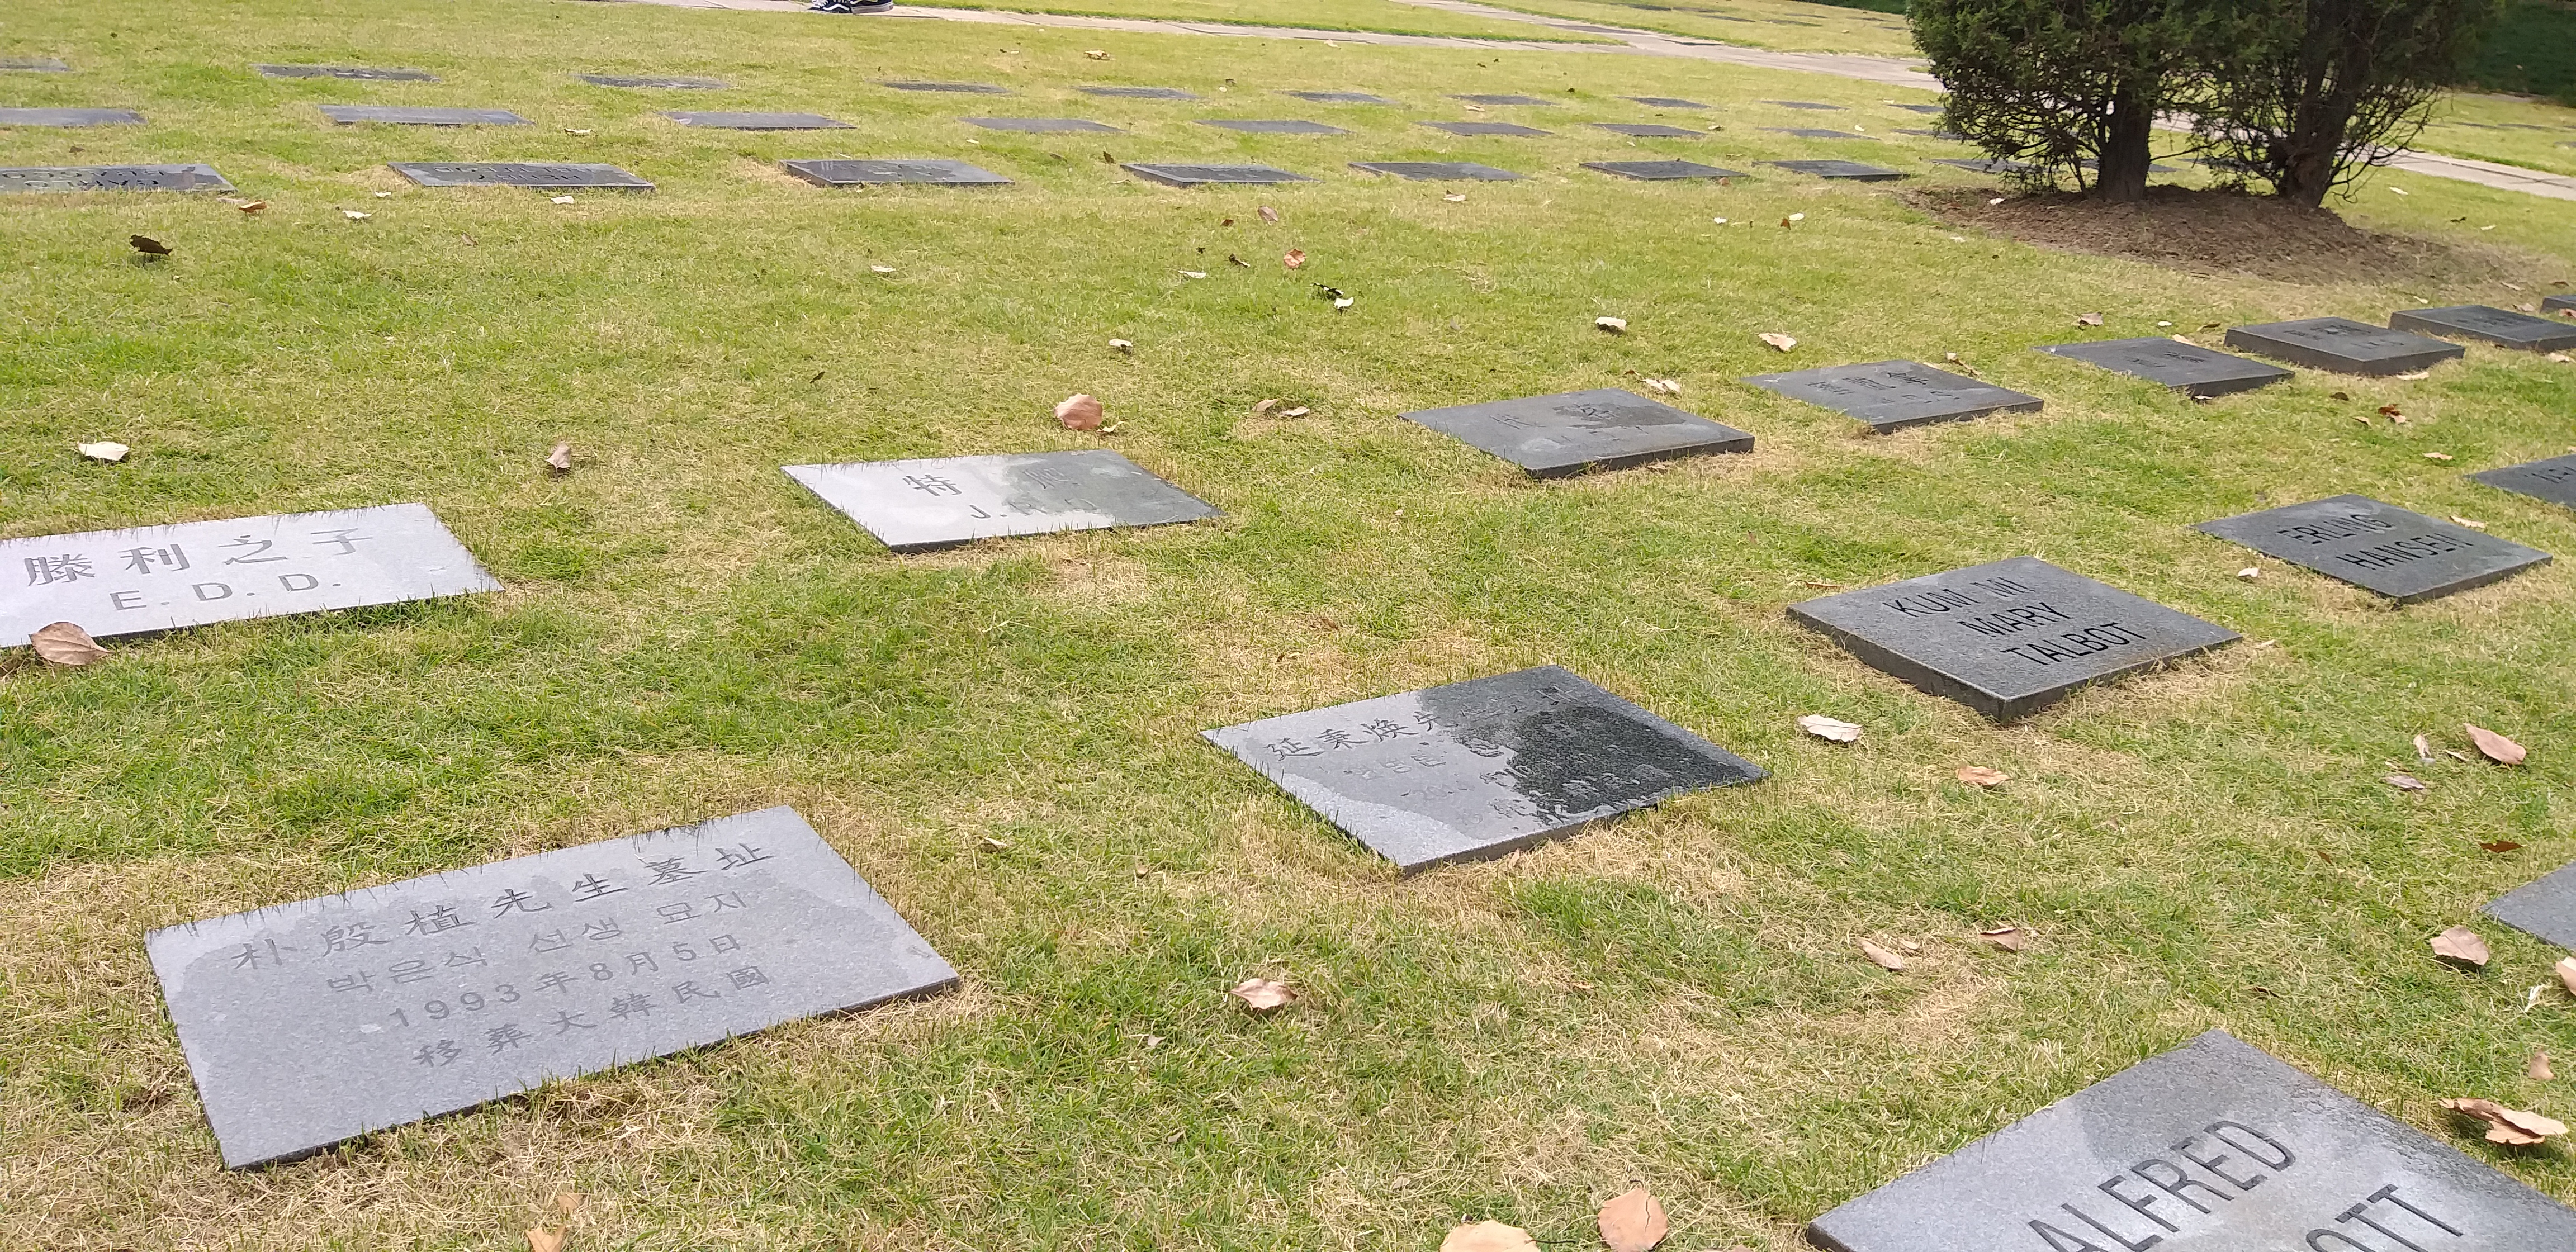  박은식 선생님의 묘지.